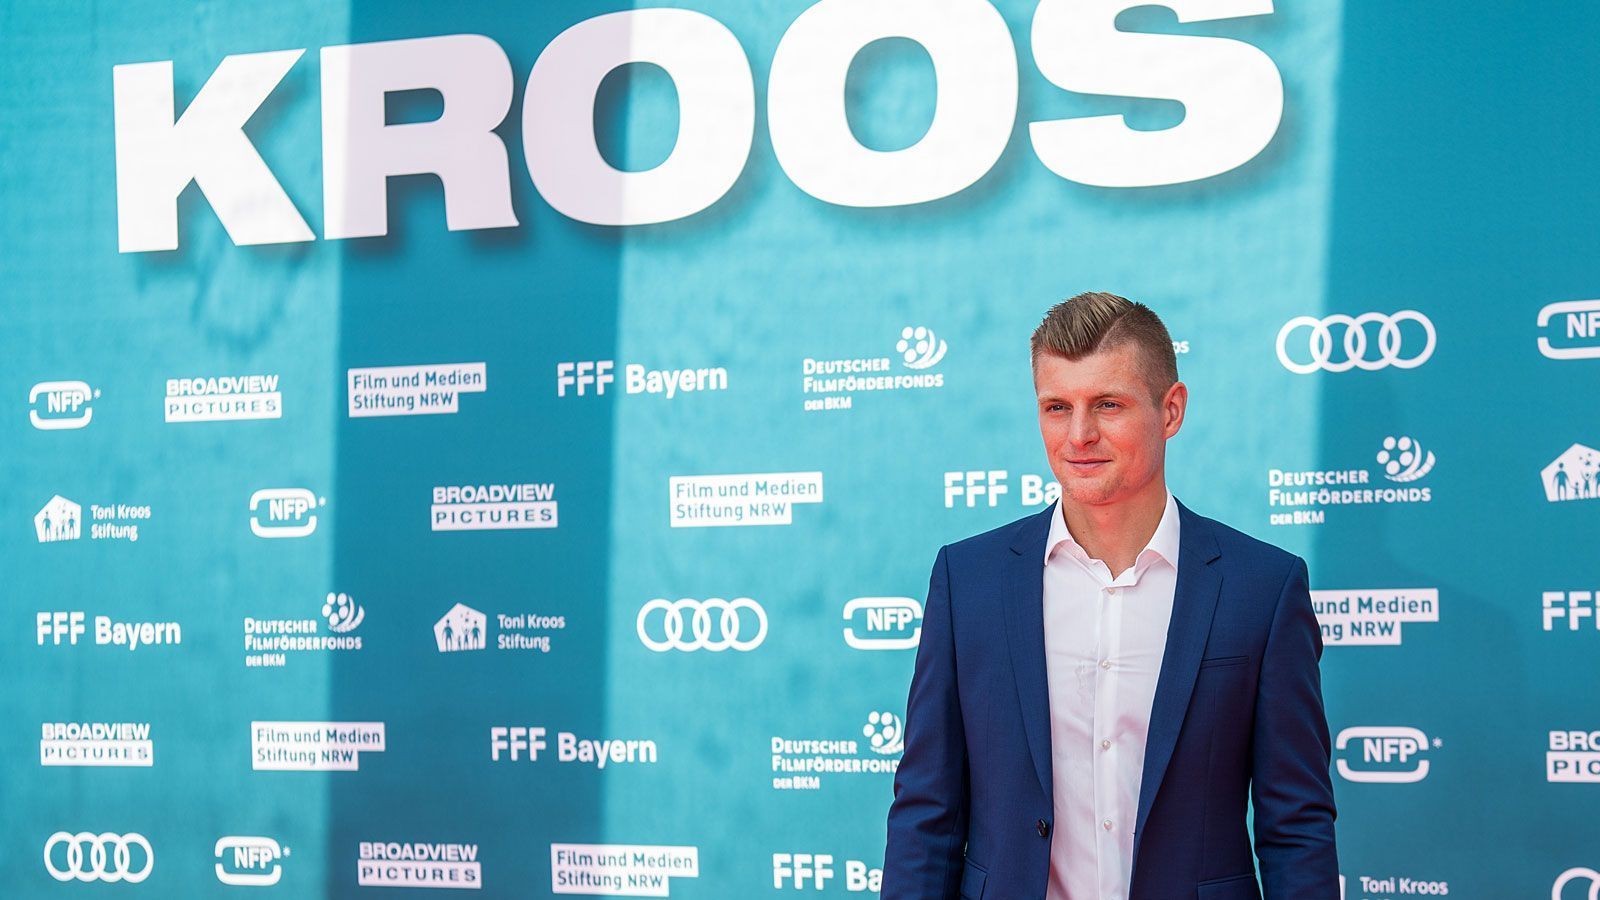 
                <strong>Toni Kroos</strong><br>
                Für Kroos läuft alles wie am Schnürchen. Nach der WM wechselte er zu Real Madrid und gewann mit den Königlichen dreimal die Champions League in Folge. Kürzlich konnte sich Kroos mit den "Galaktischen" zum spanischen Meister küren, zudem wurde ein Dokumentarfilm über sein Leben an den Kinokassen zum großen Erfolg. Im DFB-Team ist Kroos immer ein Schlüsselspieler unter Bundestrainer Joachim Löw.
              